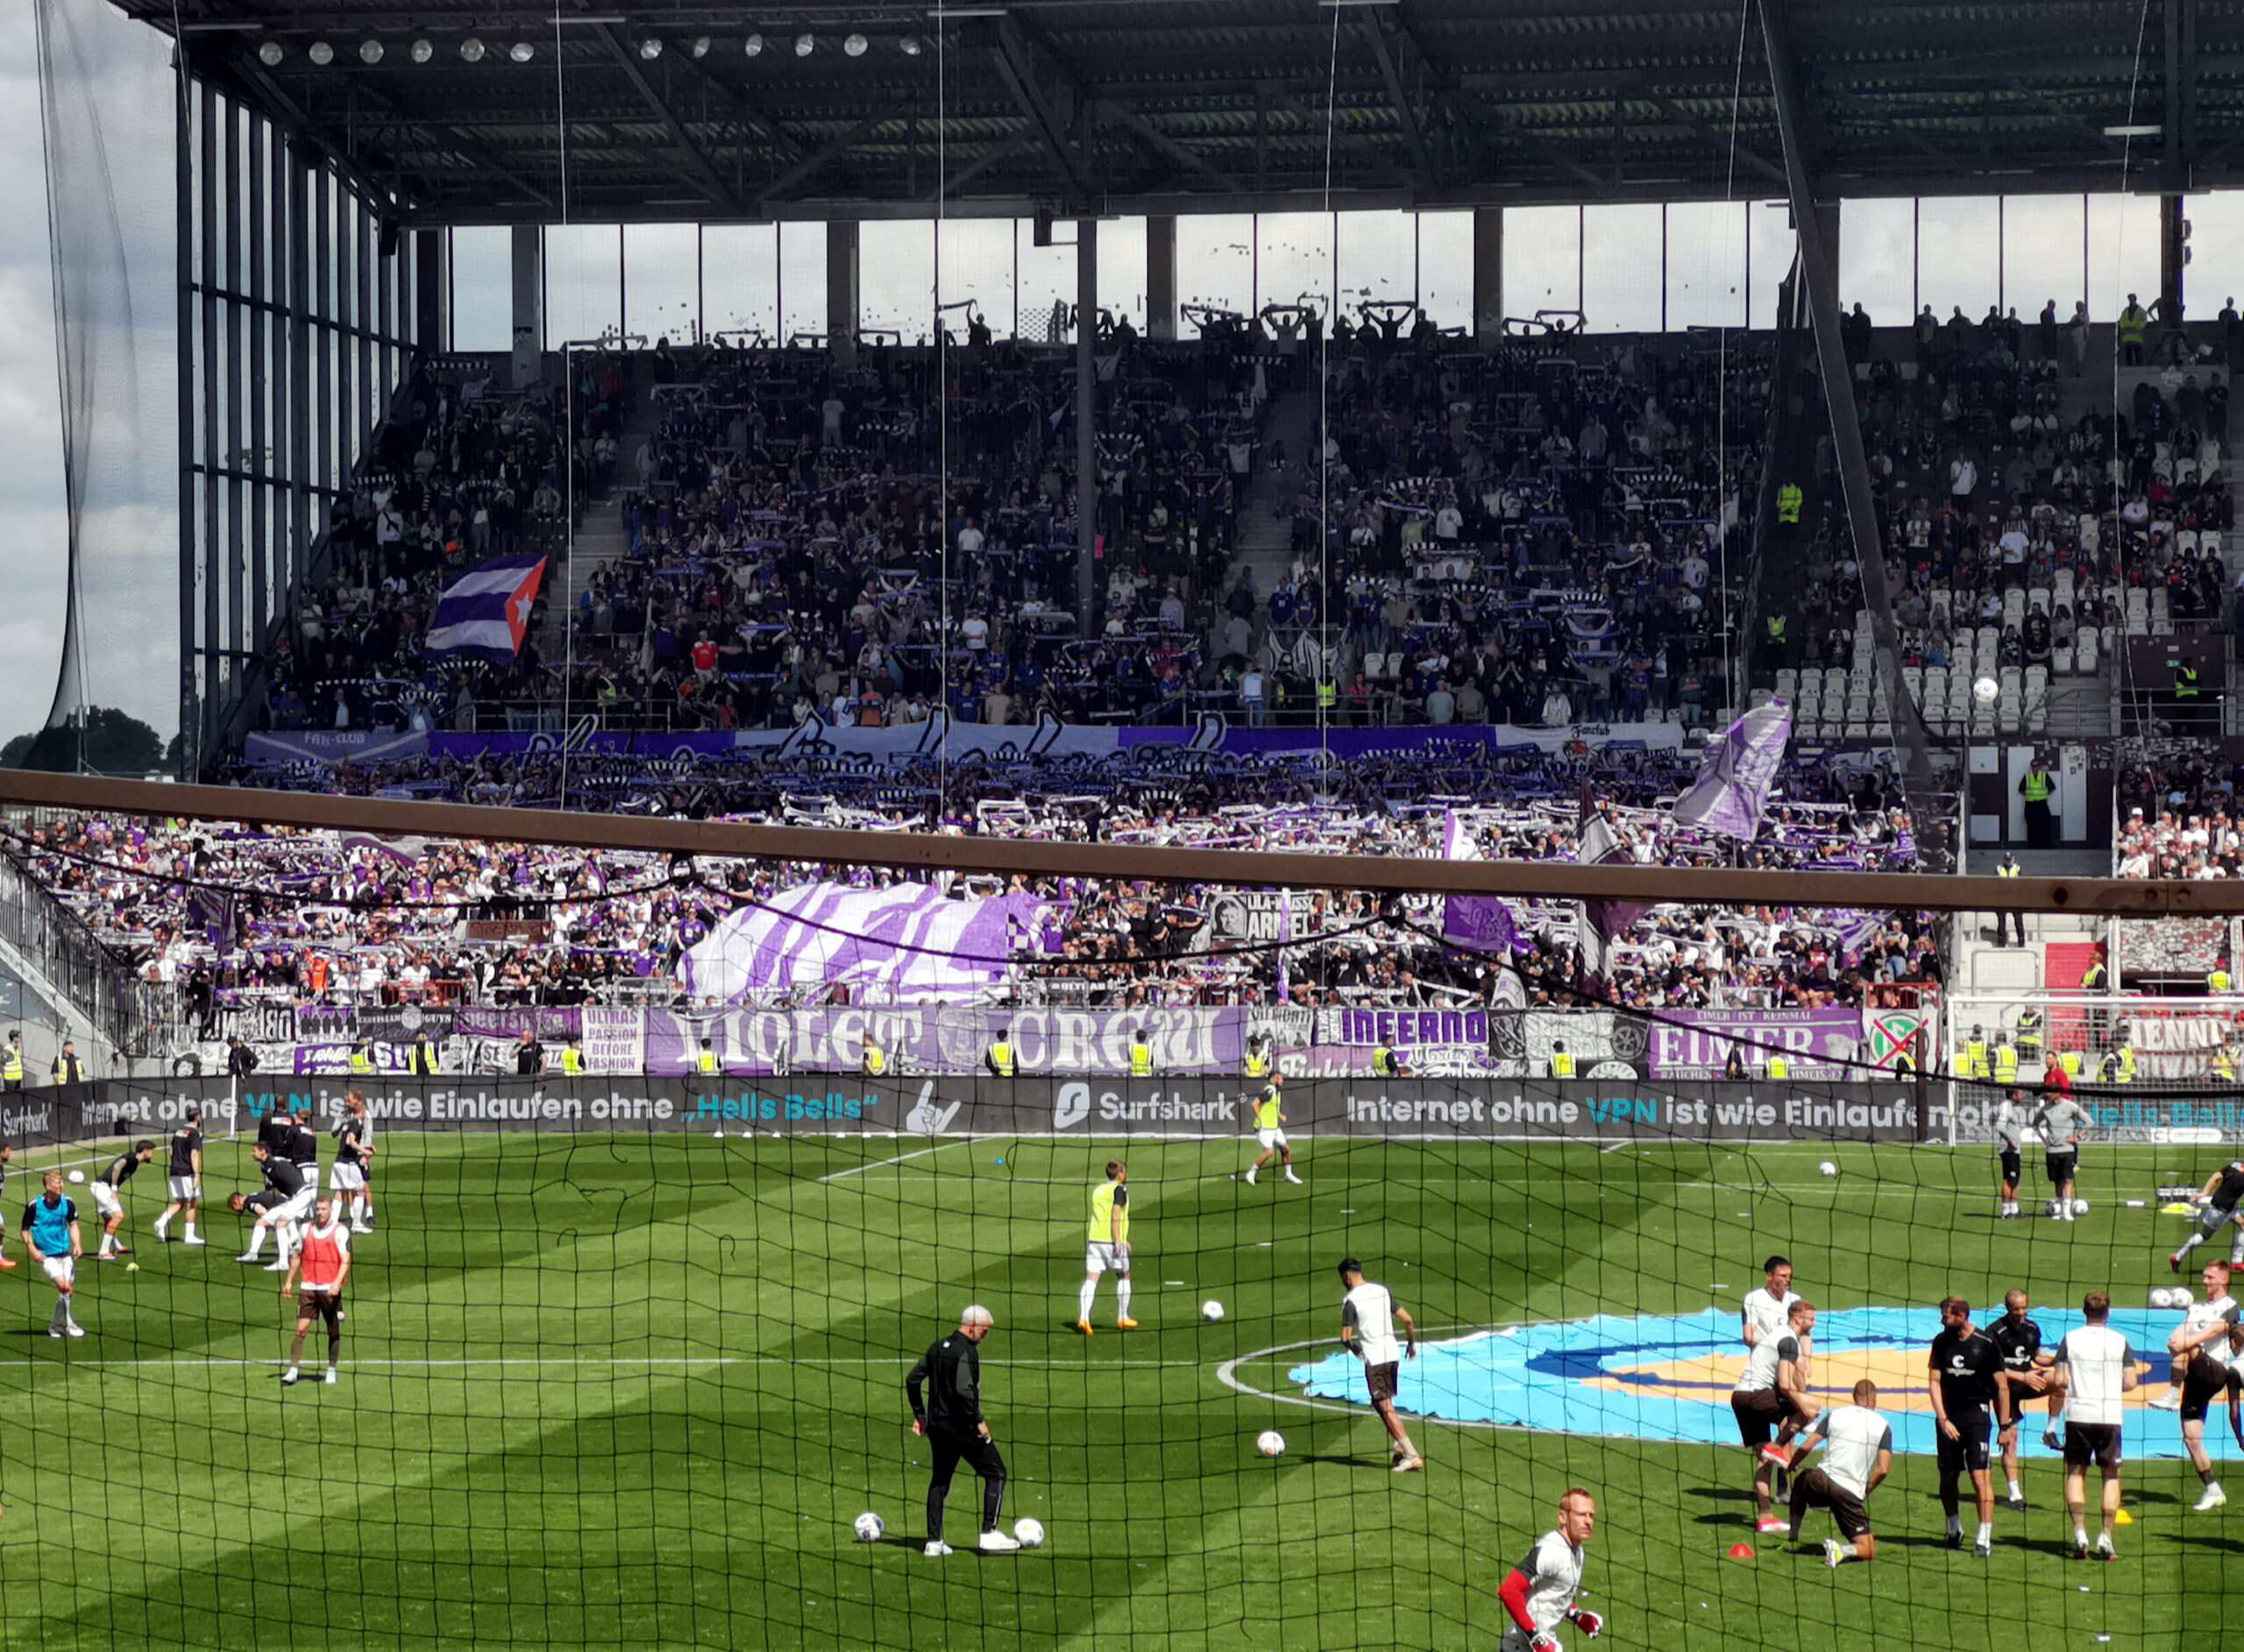 Zu sehen ist der Gästeblock im Millerntor-Stadion mit den Osnabrück-Fans, welche ein großes Banner mit ihrem Vereinswappen hochhalten. Im Vordergrund machen sich die Spieler auf dem Rasen warm